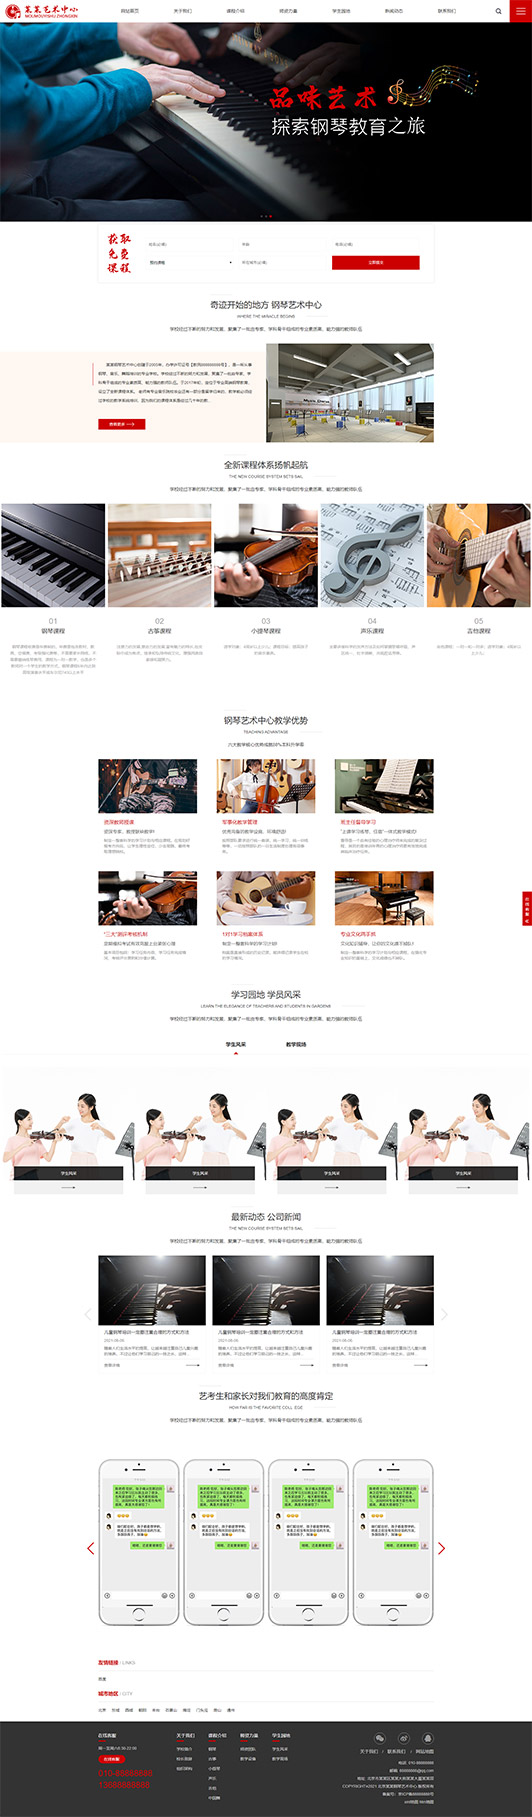 镇江钢琴艺术培训公司响应式企业网站